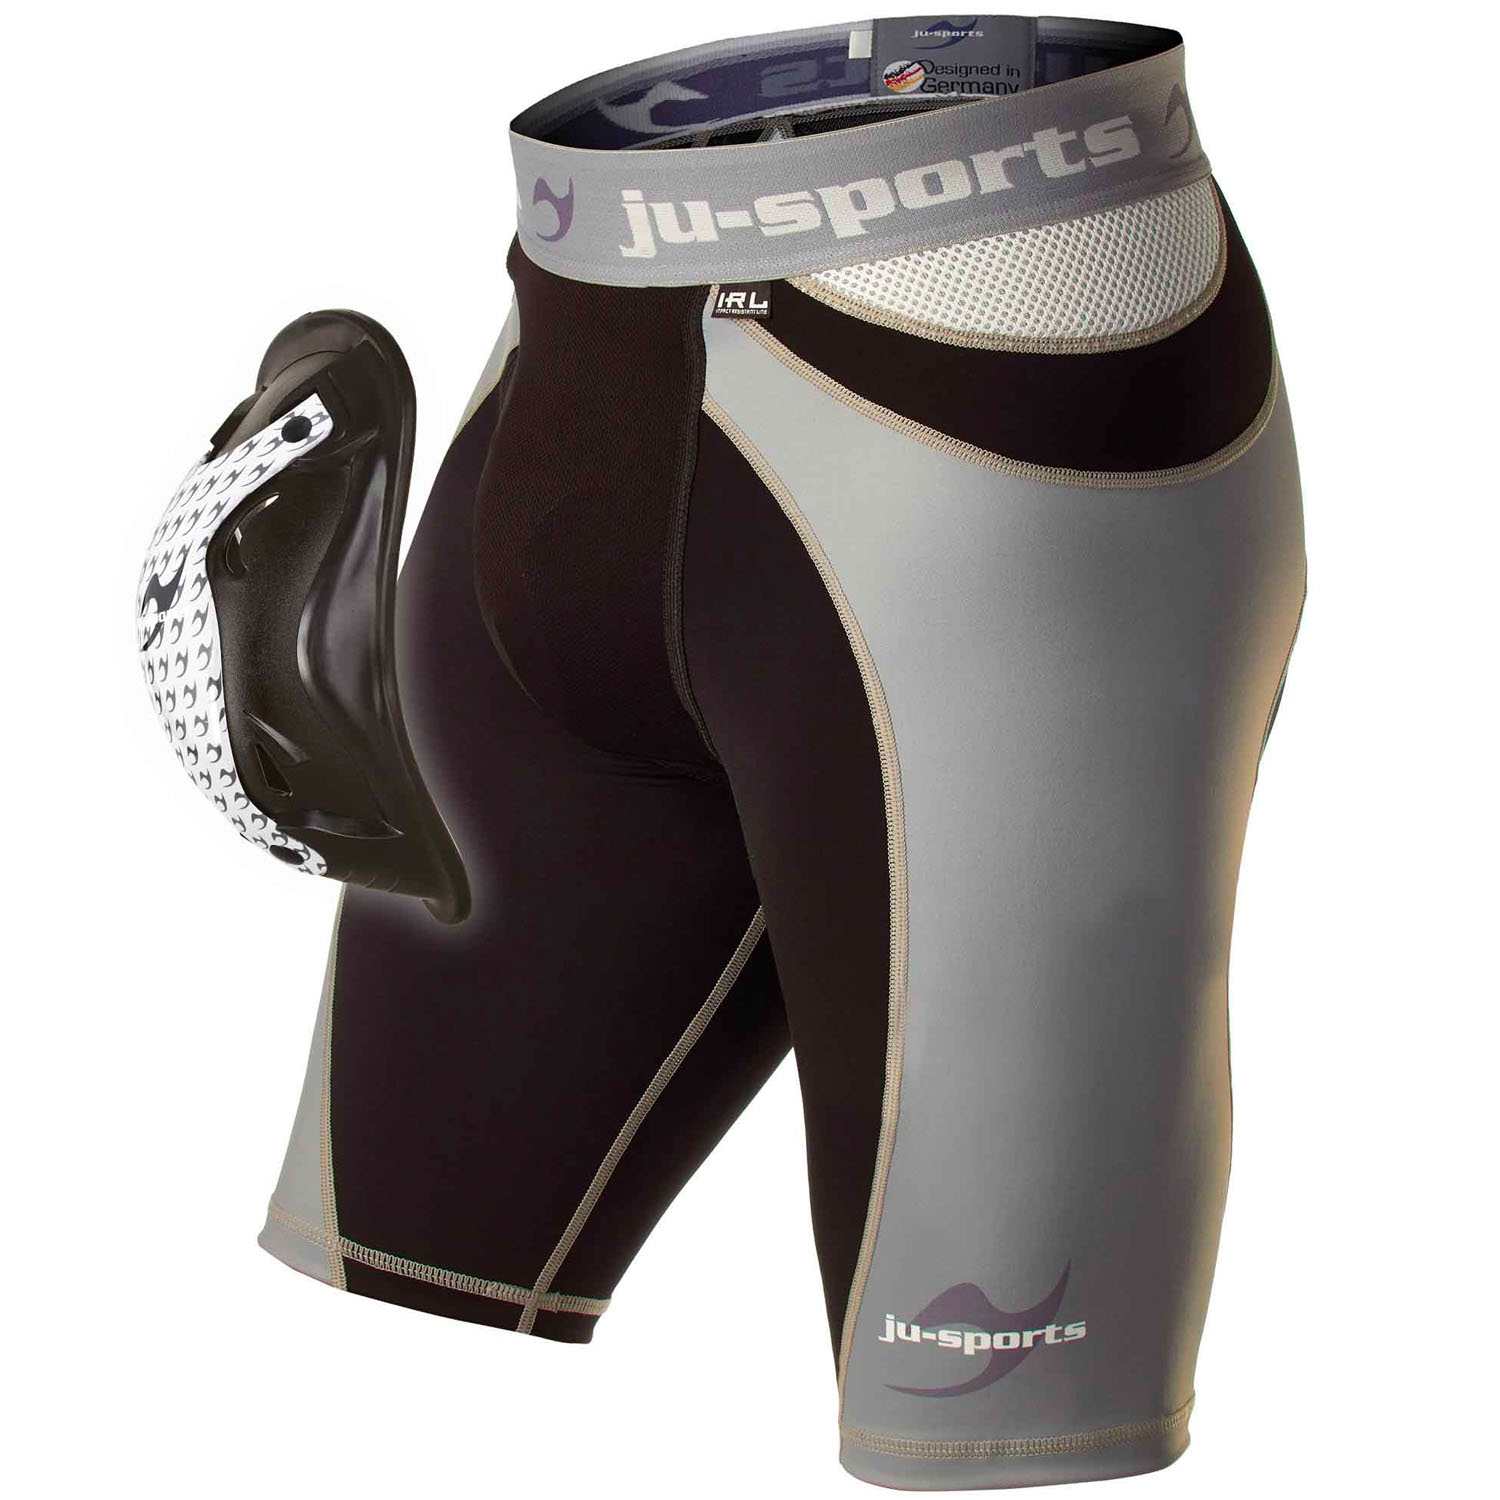 Ju-Sports Compression Shorts, Pro Line Motion Pro Flexcup M